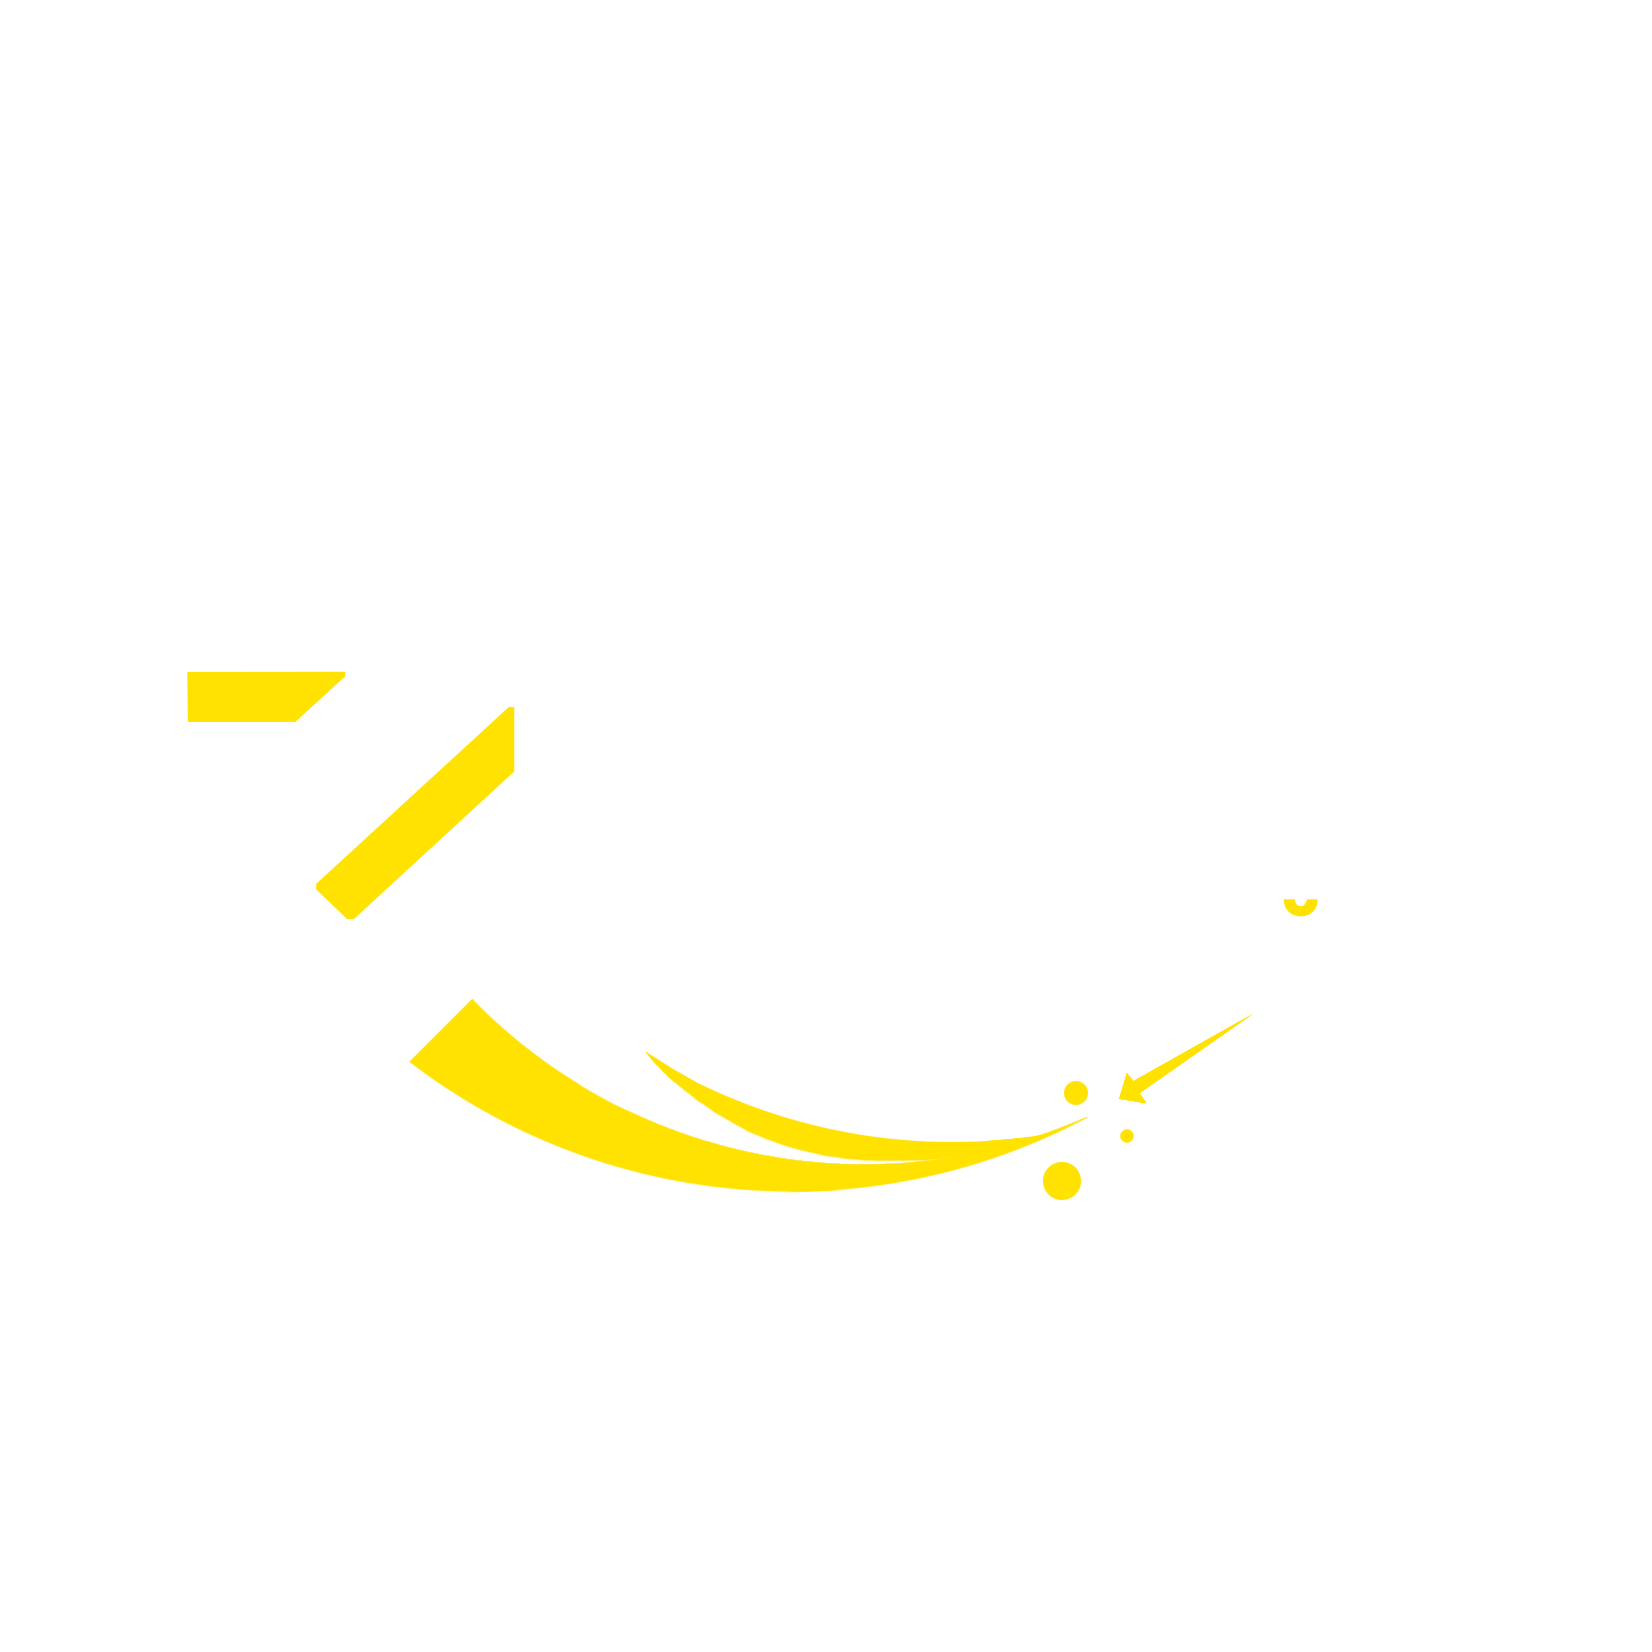 Z2Z.az Onlayn mağaza